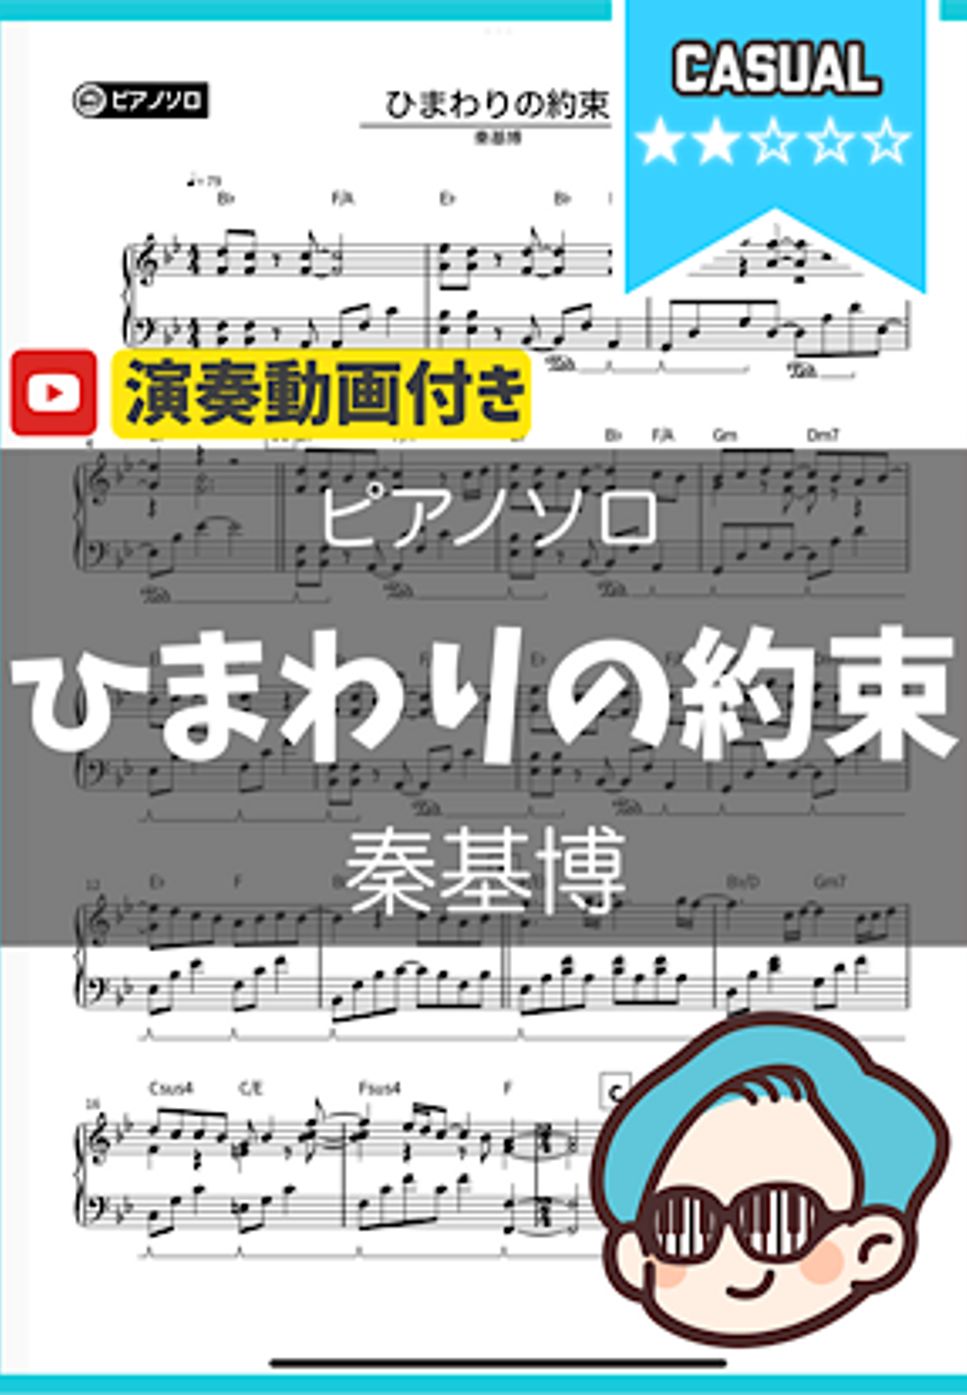 秦基博 - ひまわりの約束 by シータピアノ